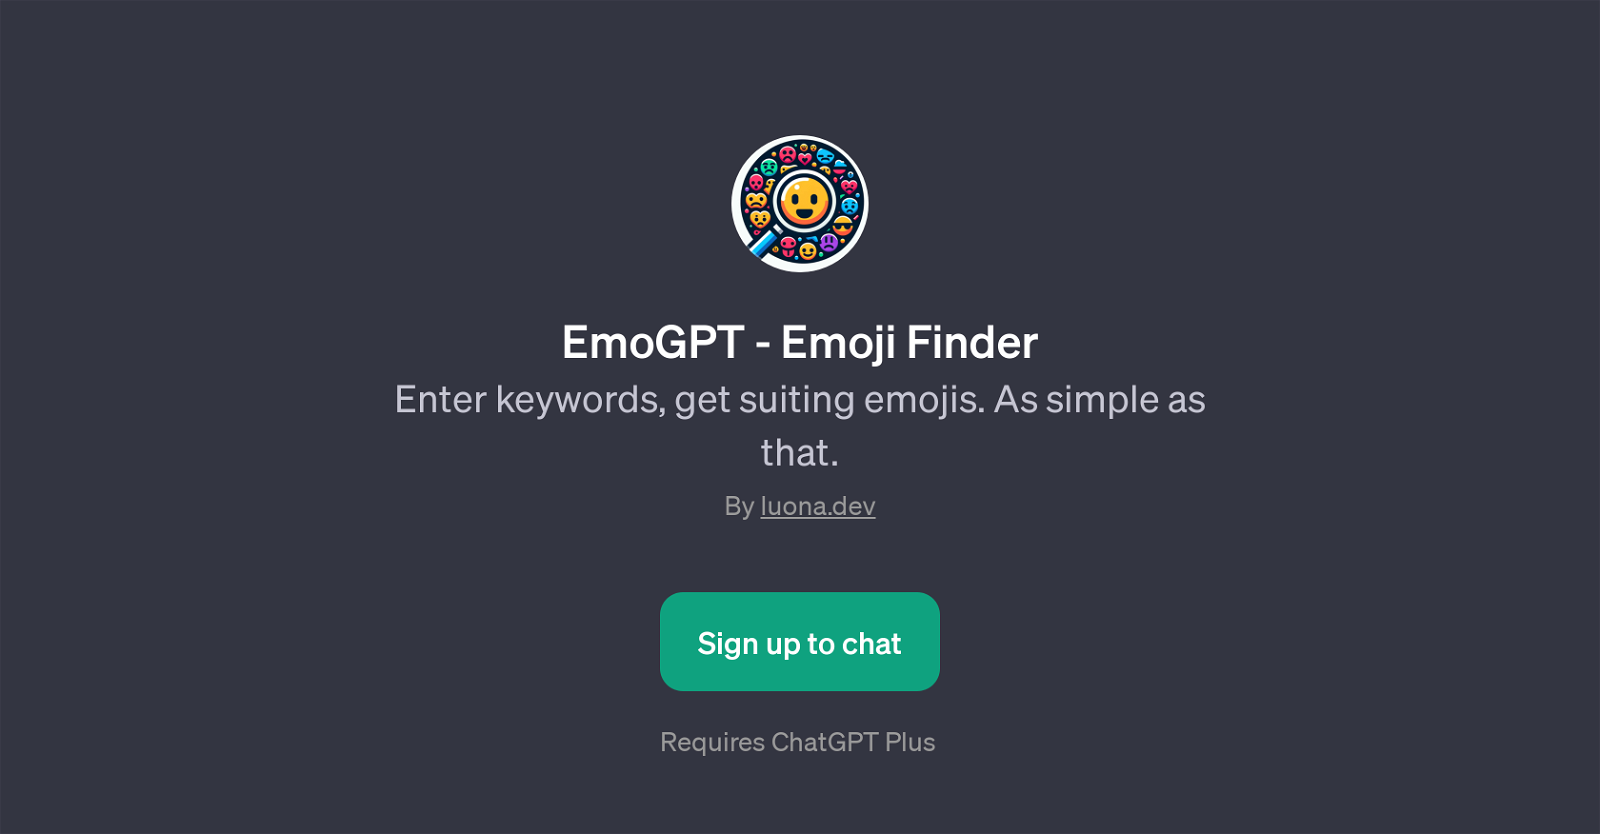 EmoGPT - Emoji Finder website